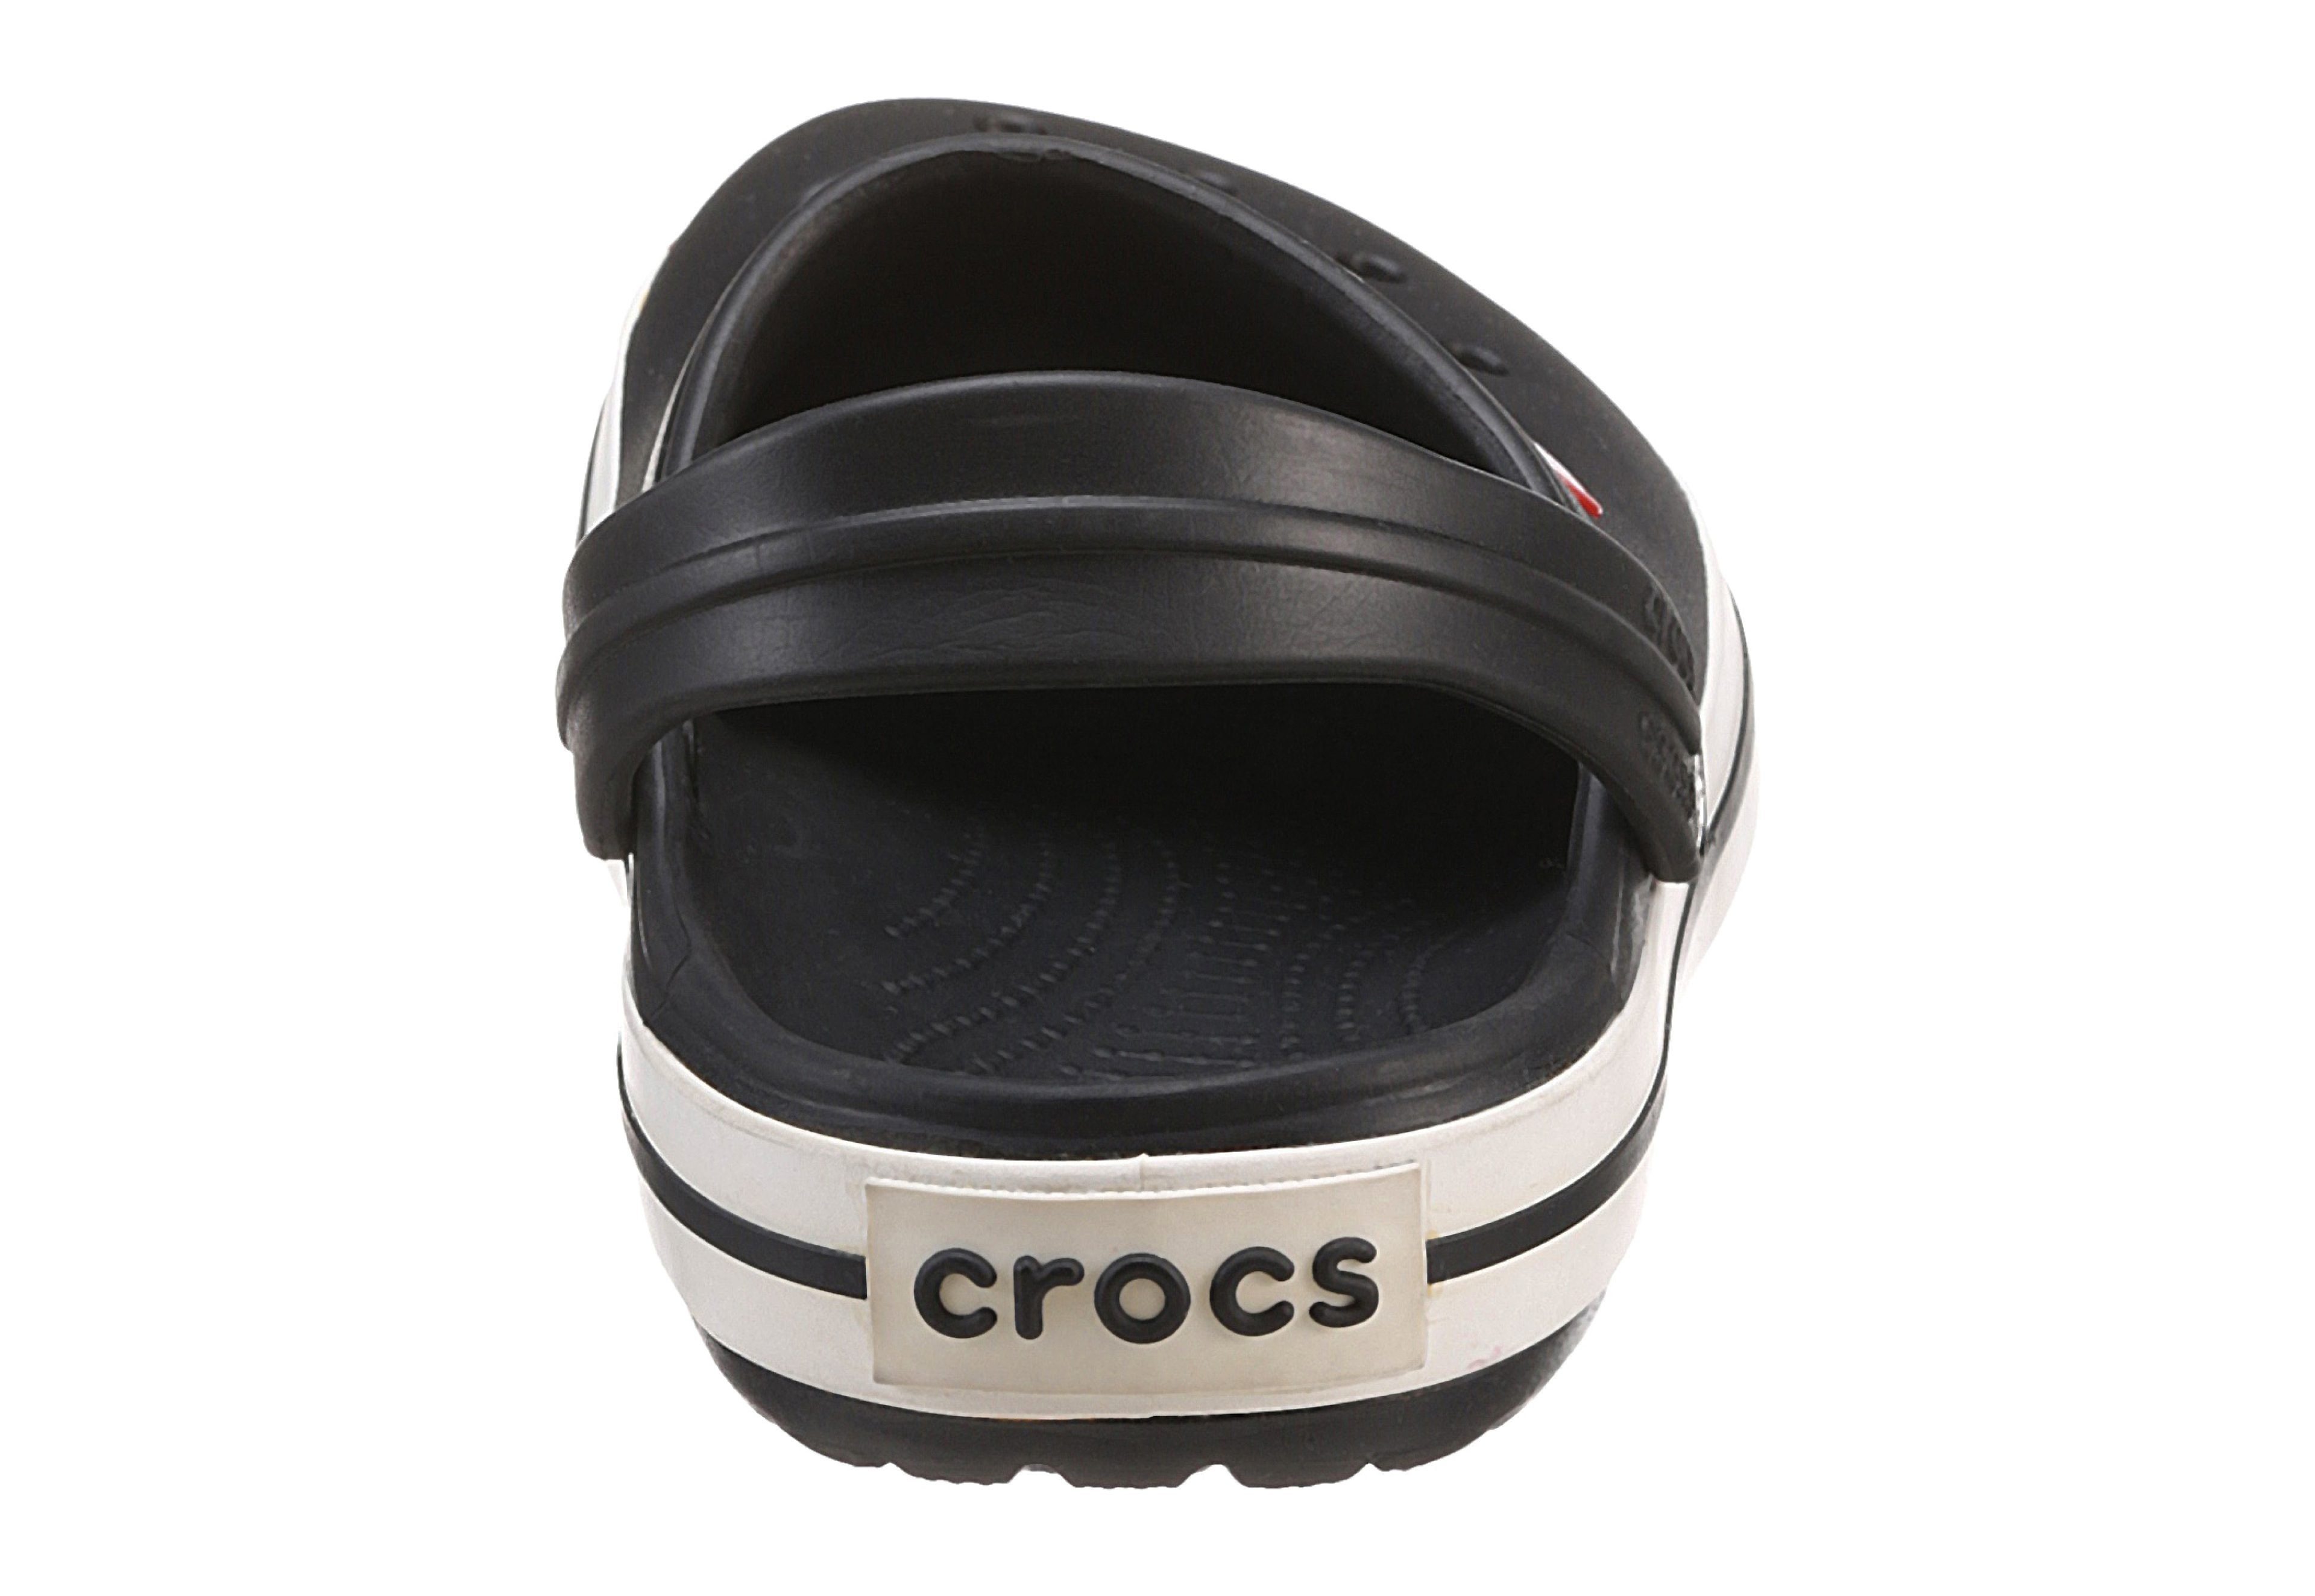 Crocs Crocband Laufsohle mit schwarz-weiß farbiger Clog